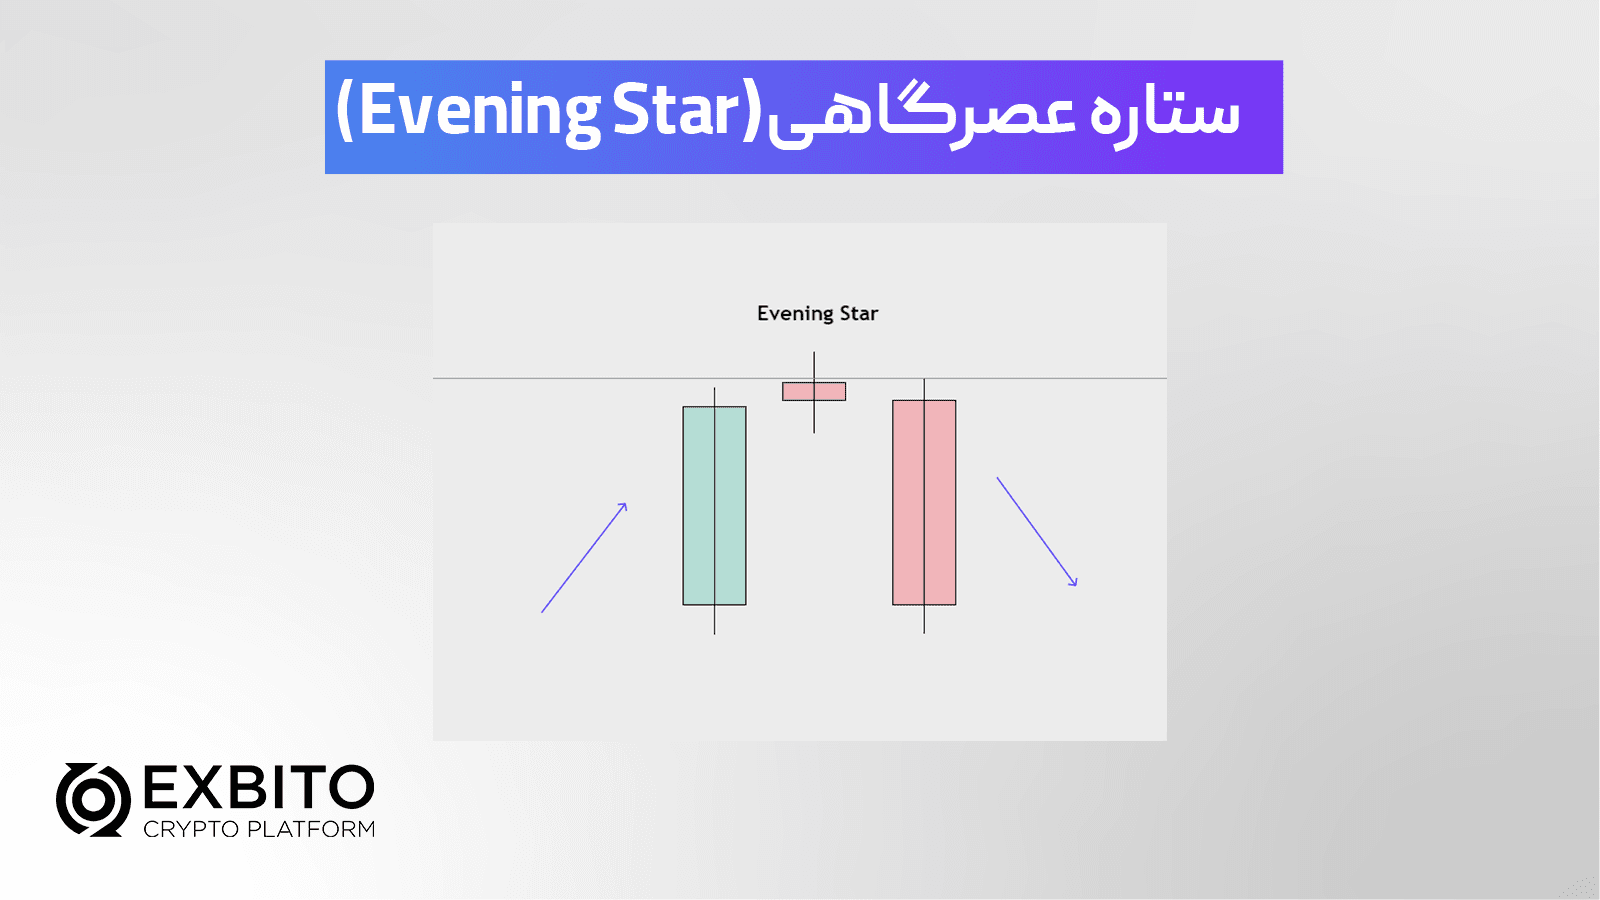 الگوی ستاره عصرگاهی یا ستاره شامگاهی (Evening Star)